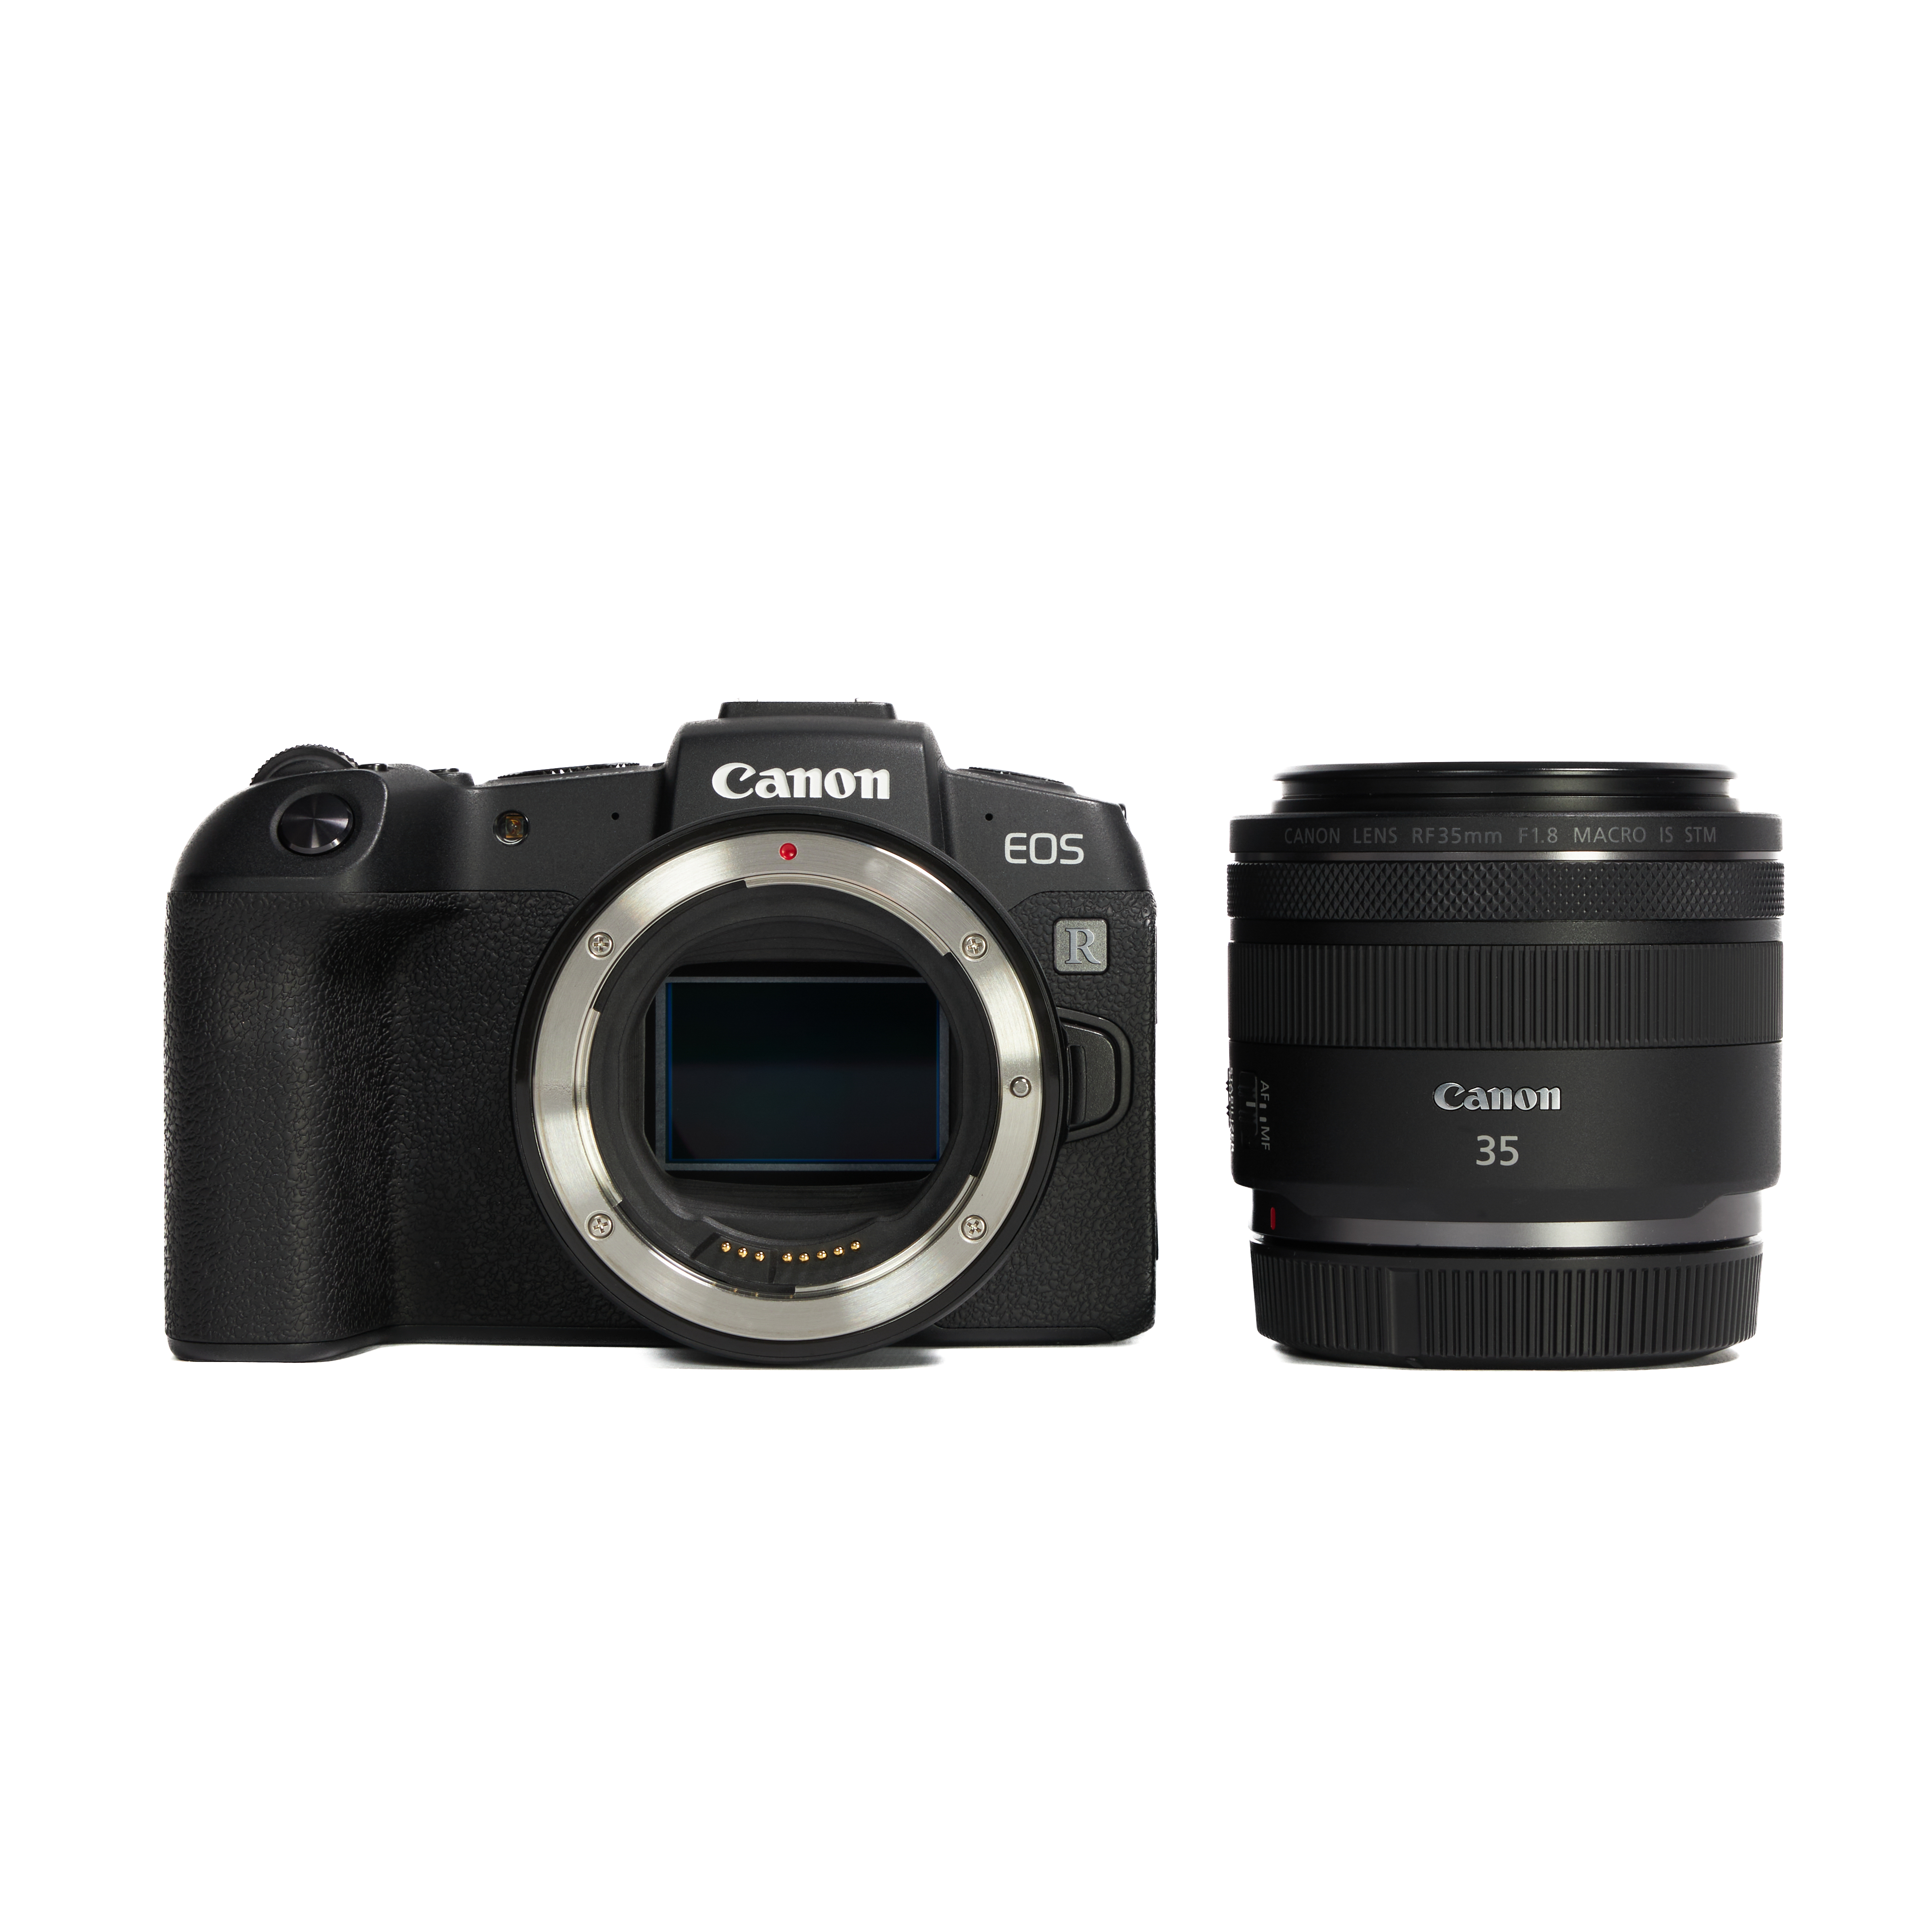 カメラ デジタルカメラ レンタル - Canon(キヤノン)EOS RP RF35 MACRO IS STM マウント 